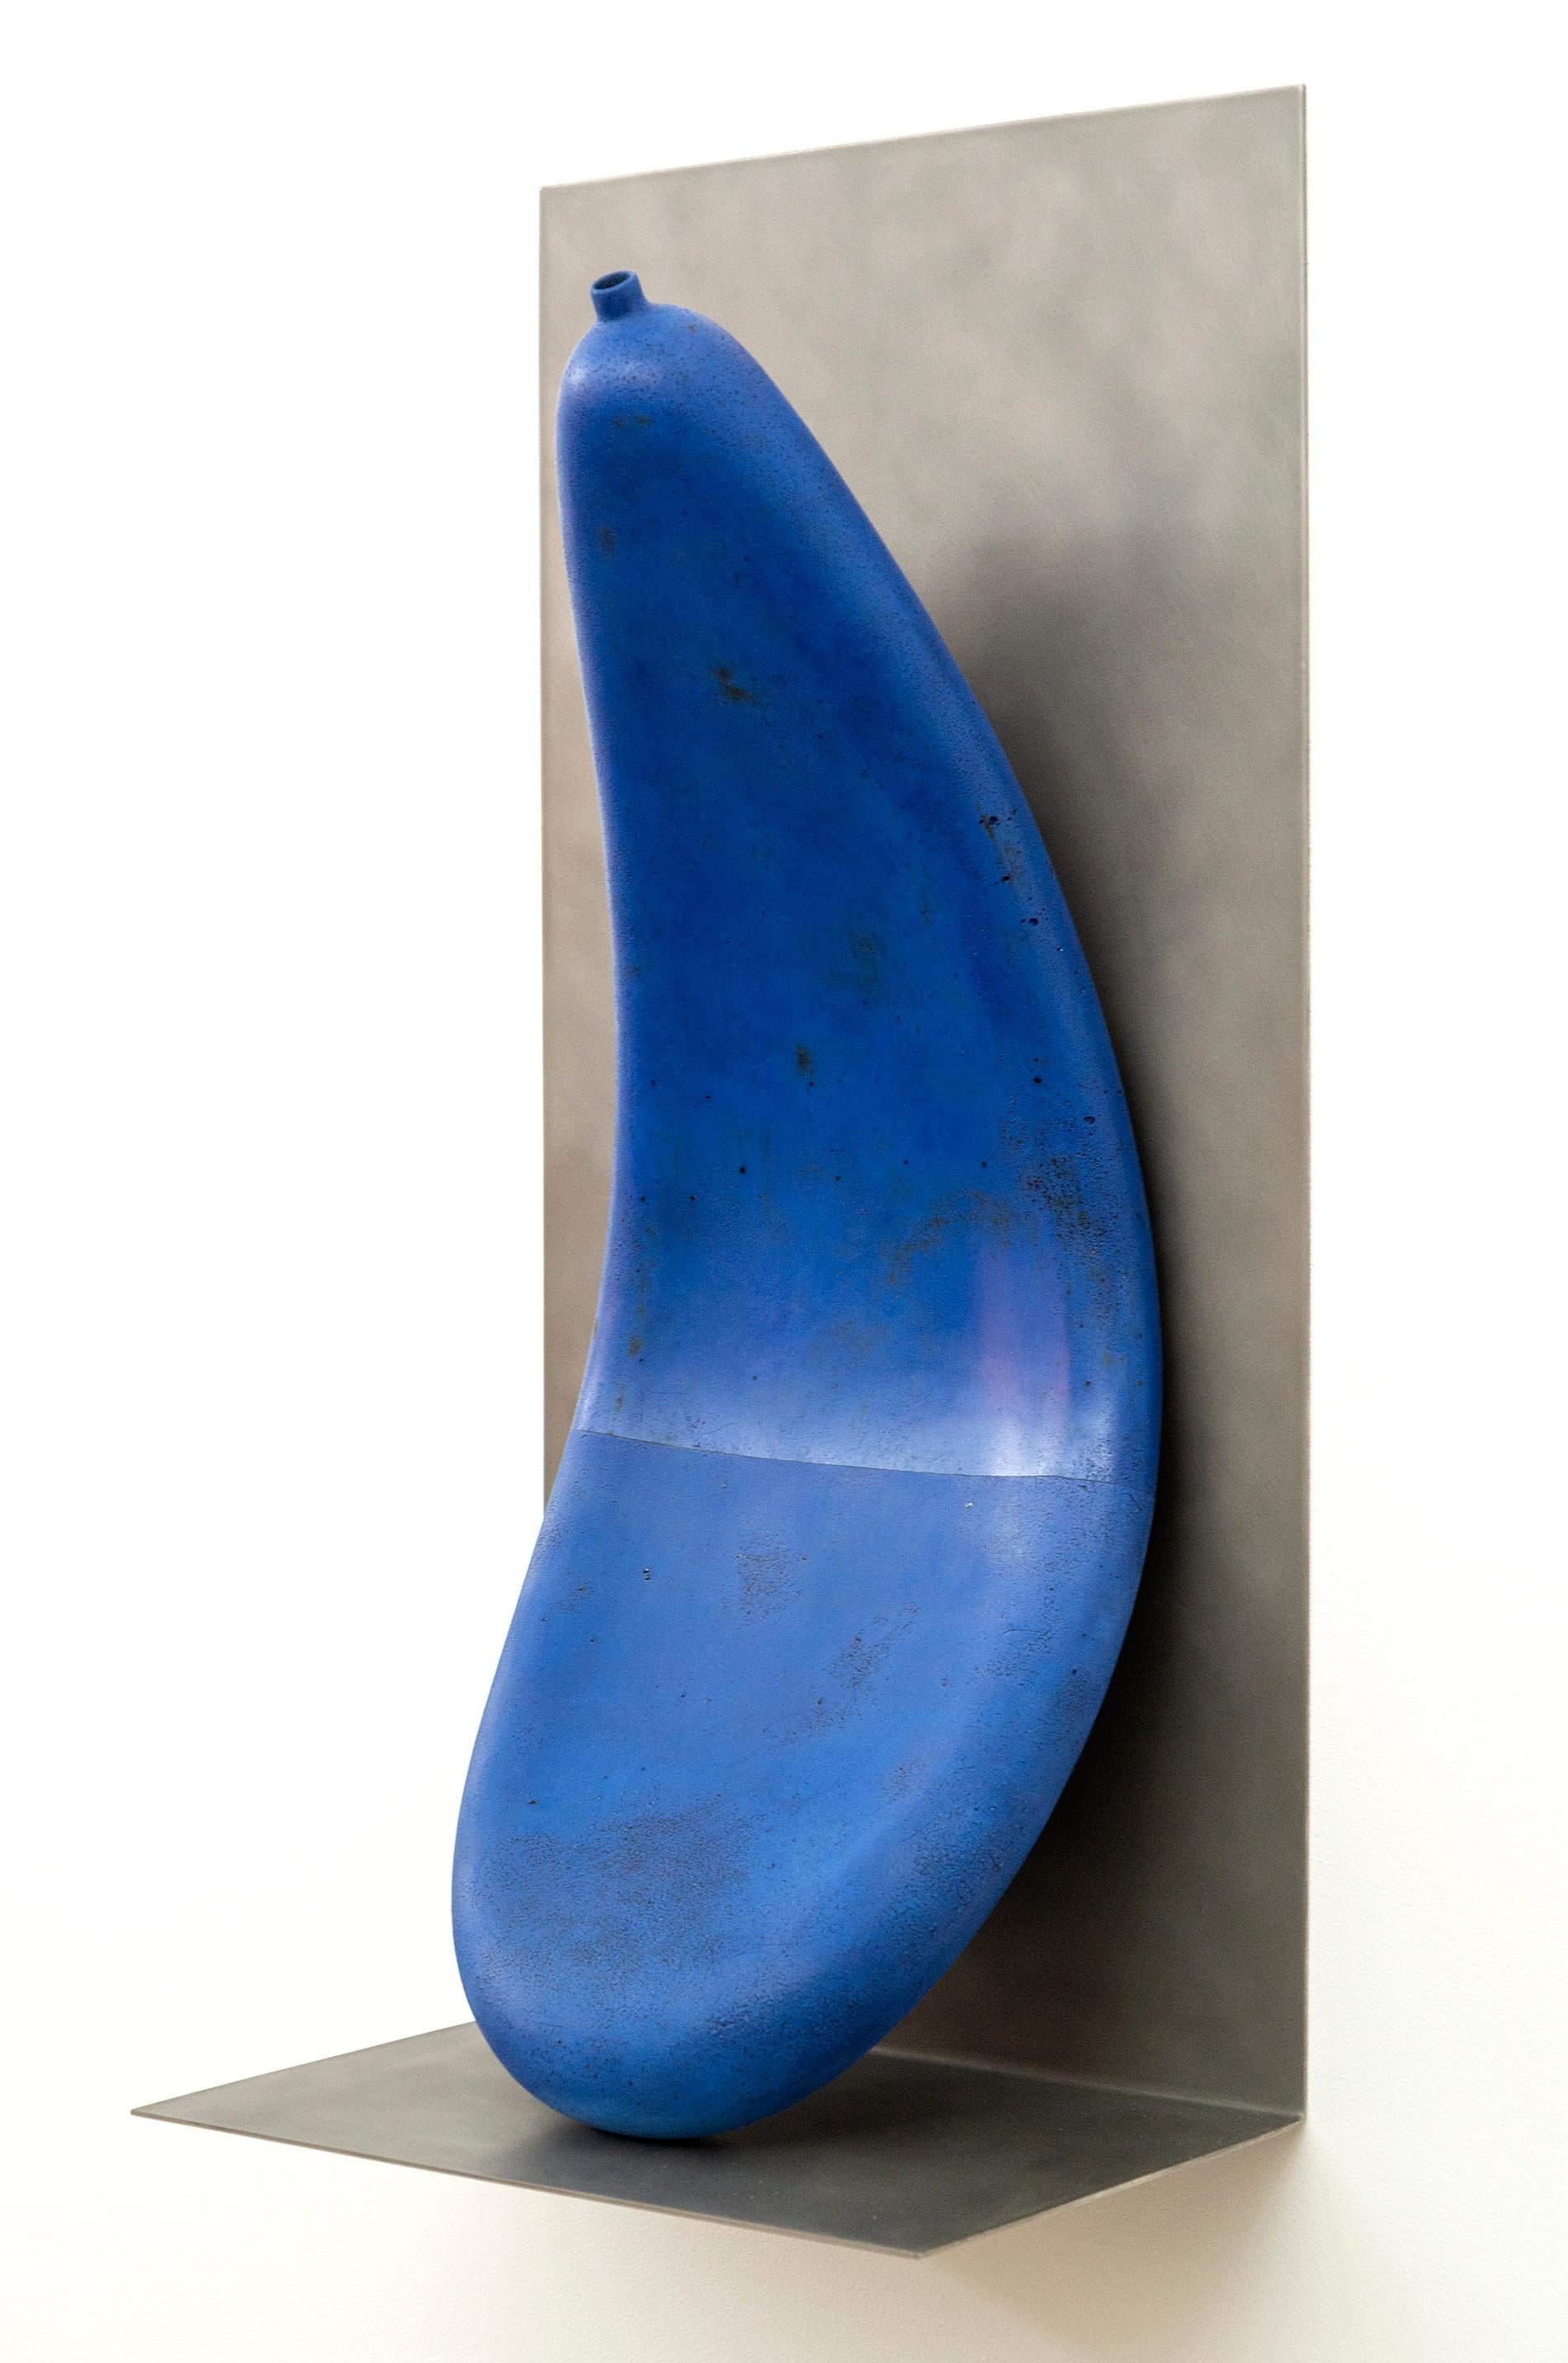 letsgoawayforawhile - playful, blue, abstract, elongated, ceramic wall sculpture - Abstract Sculpture by Steven Heinemann